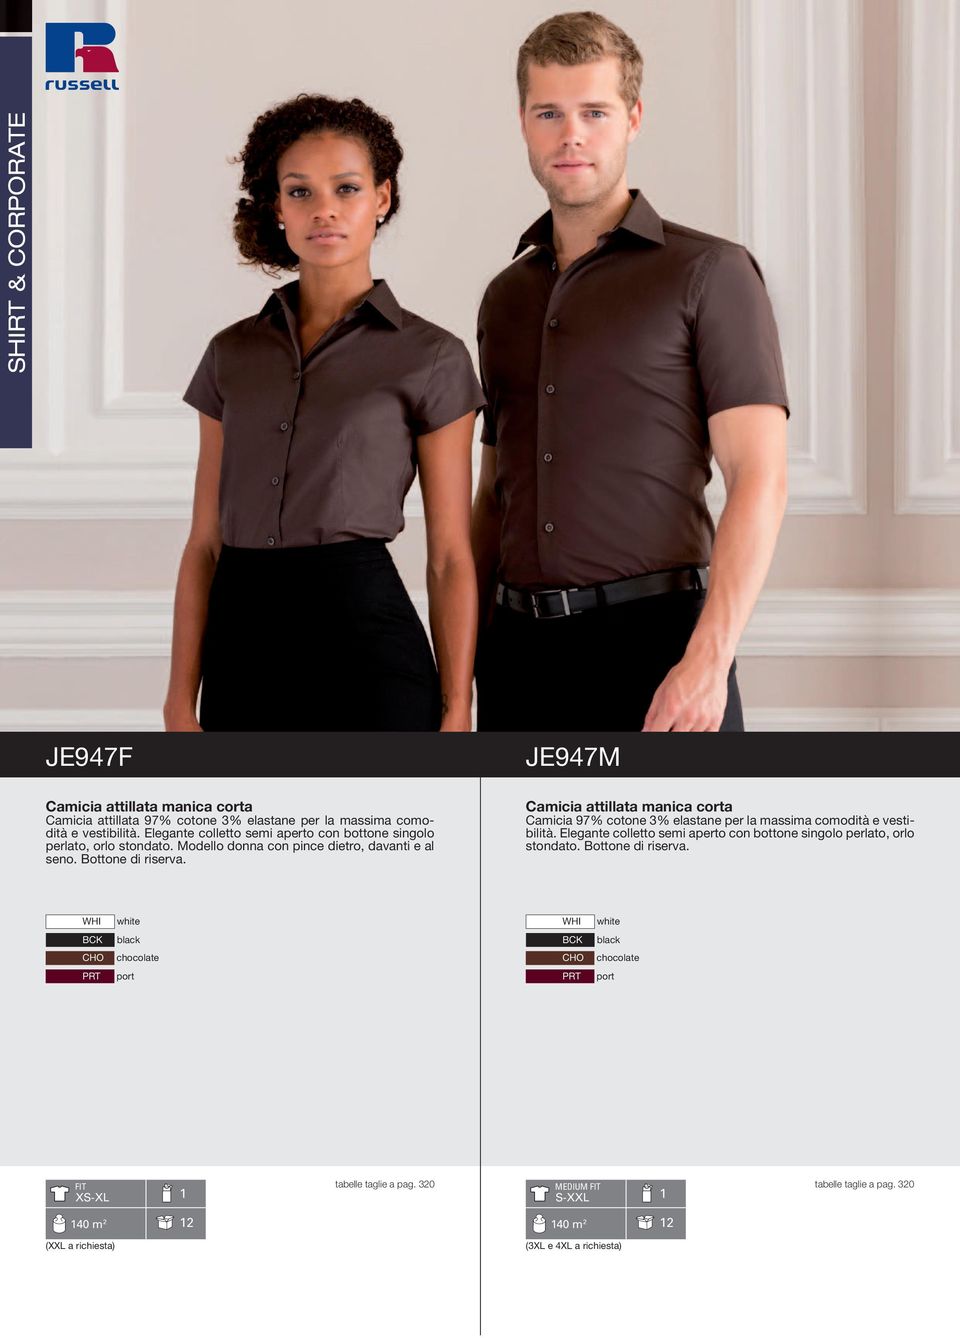 JE947M Camicia attillata manica corta Camicia 97% cotone 3% elastane per la massima comodità e vestibilità.